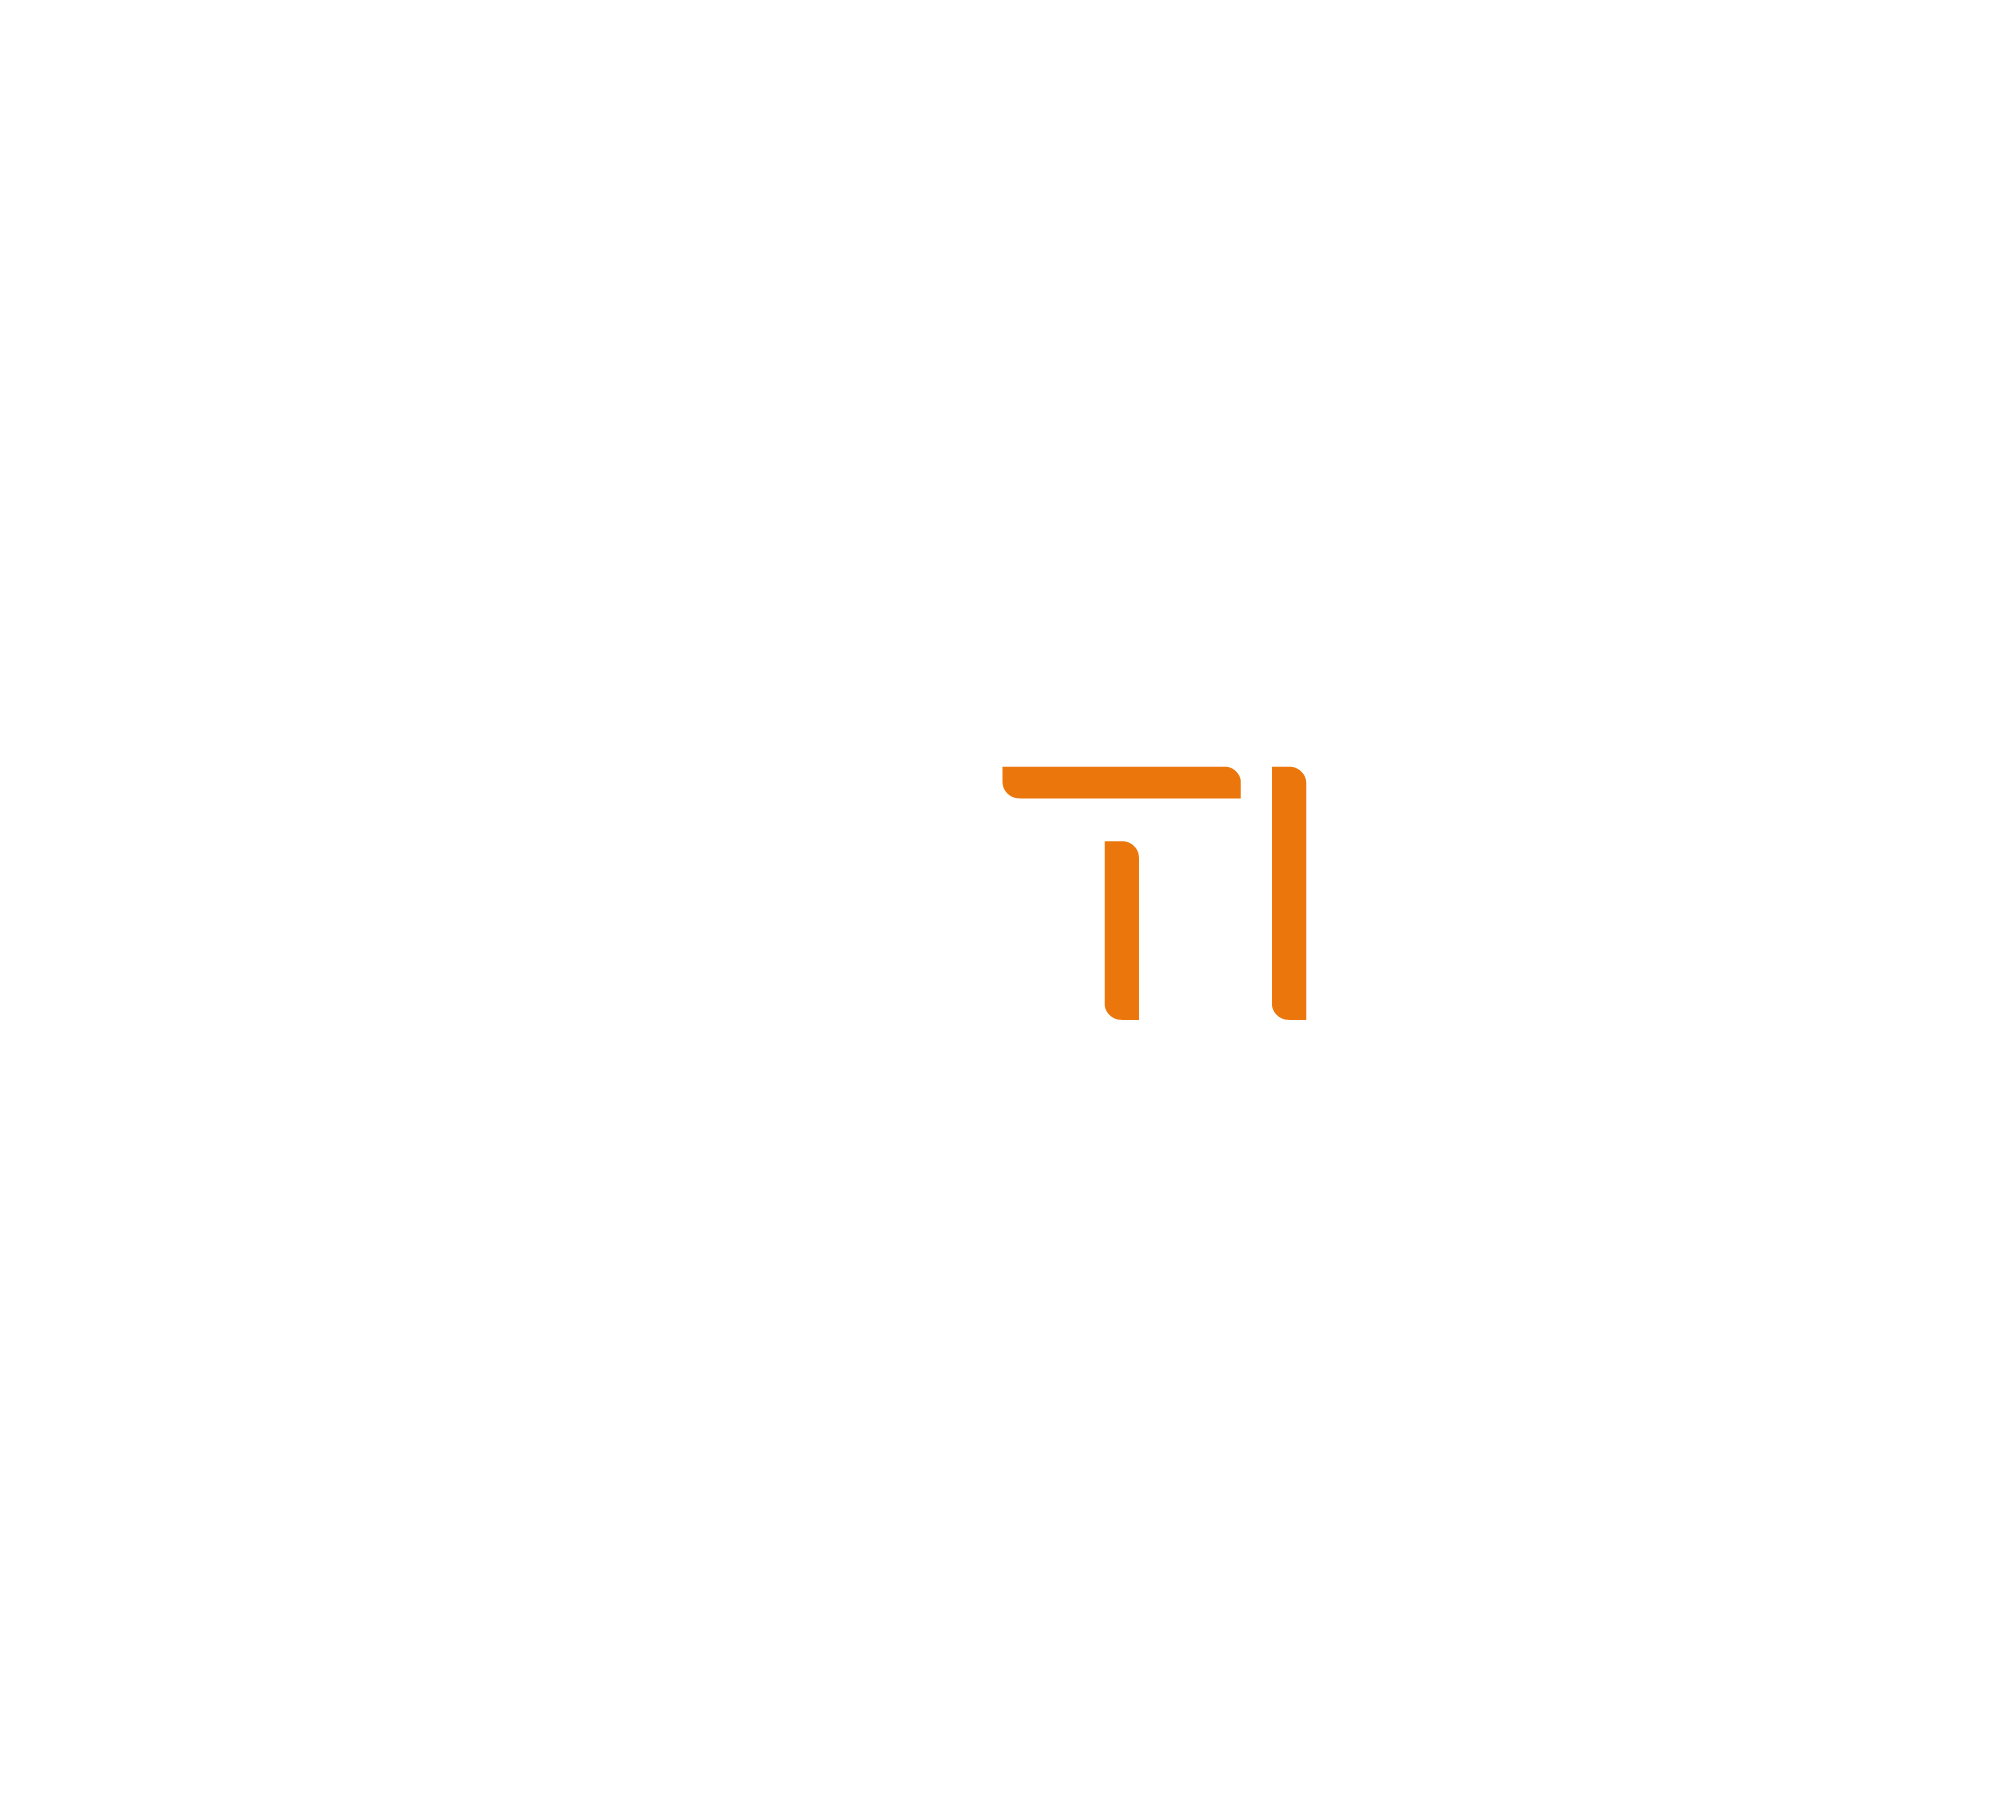 Logo Feittinf